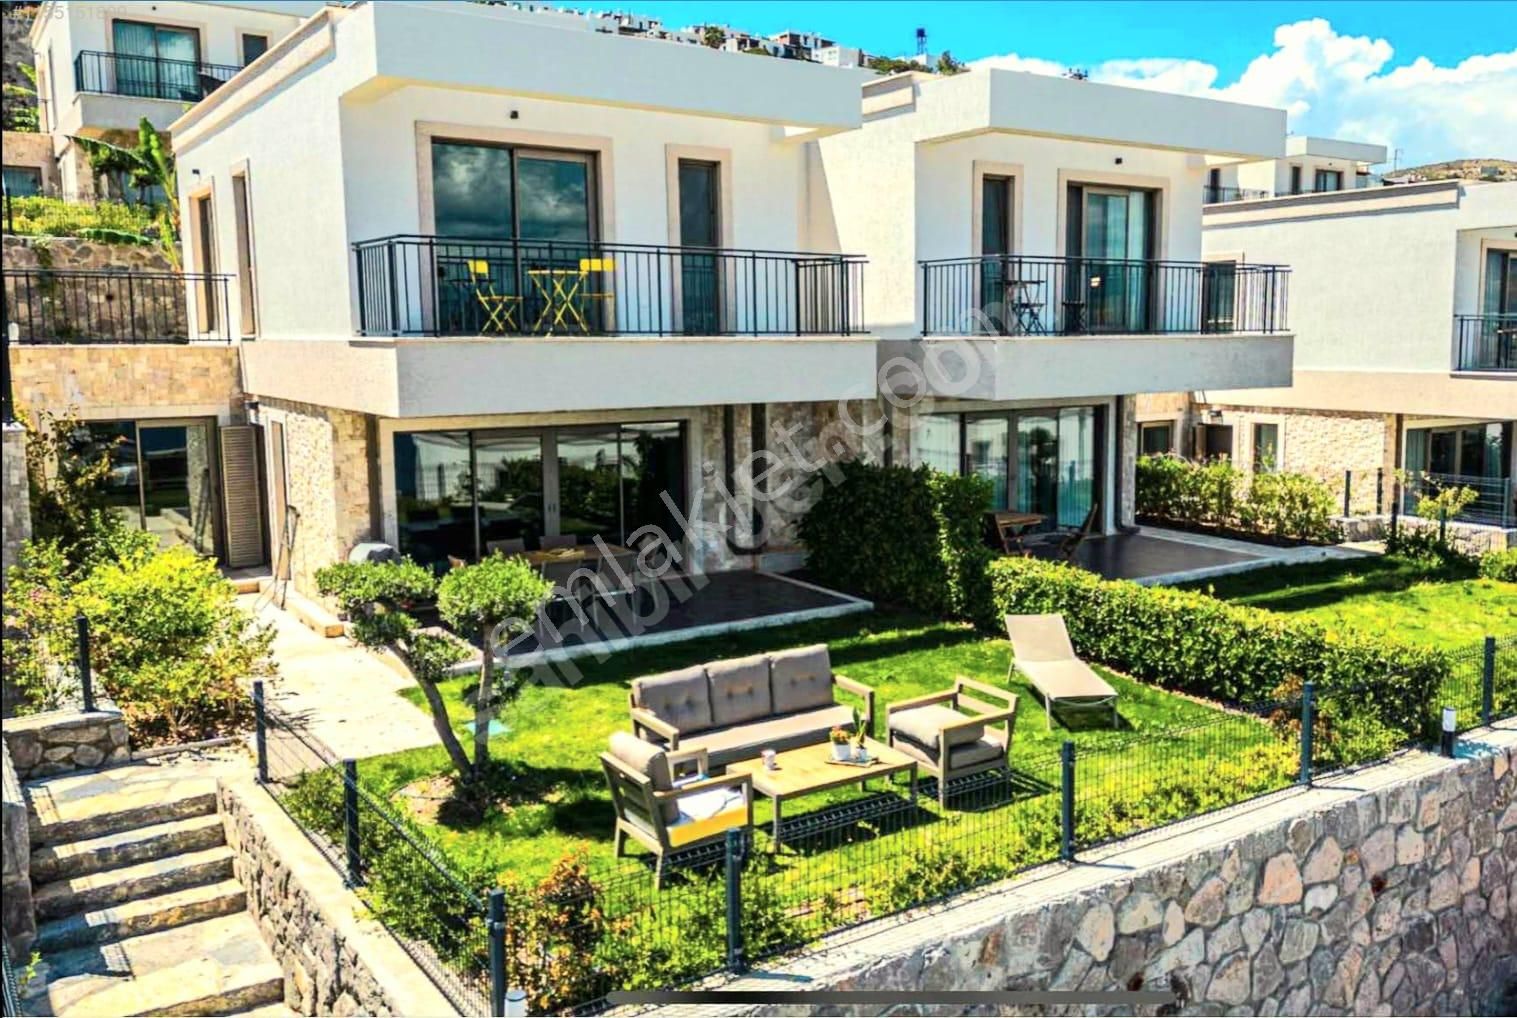 Bodrum Akyarlar Satılık Villa  Bodrum Aspat Mevkinde Satılık Denize Sıfır 4+1 Özel Plajlı Villa